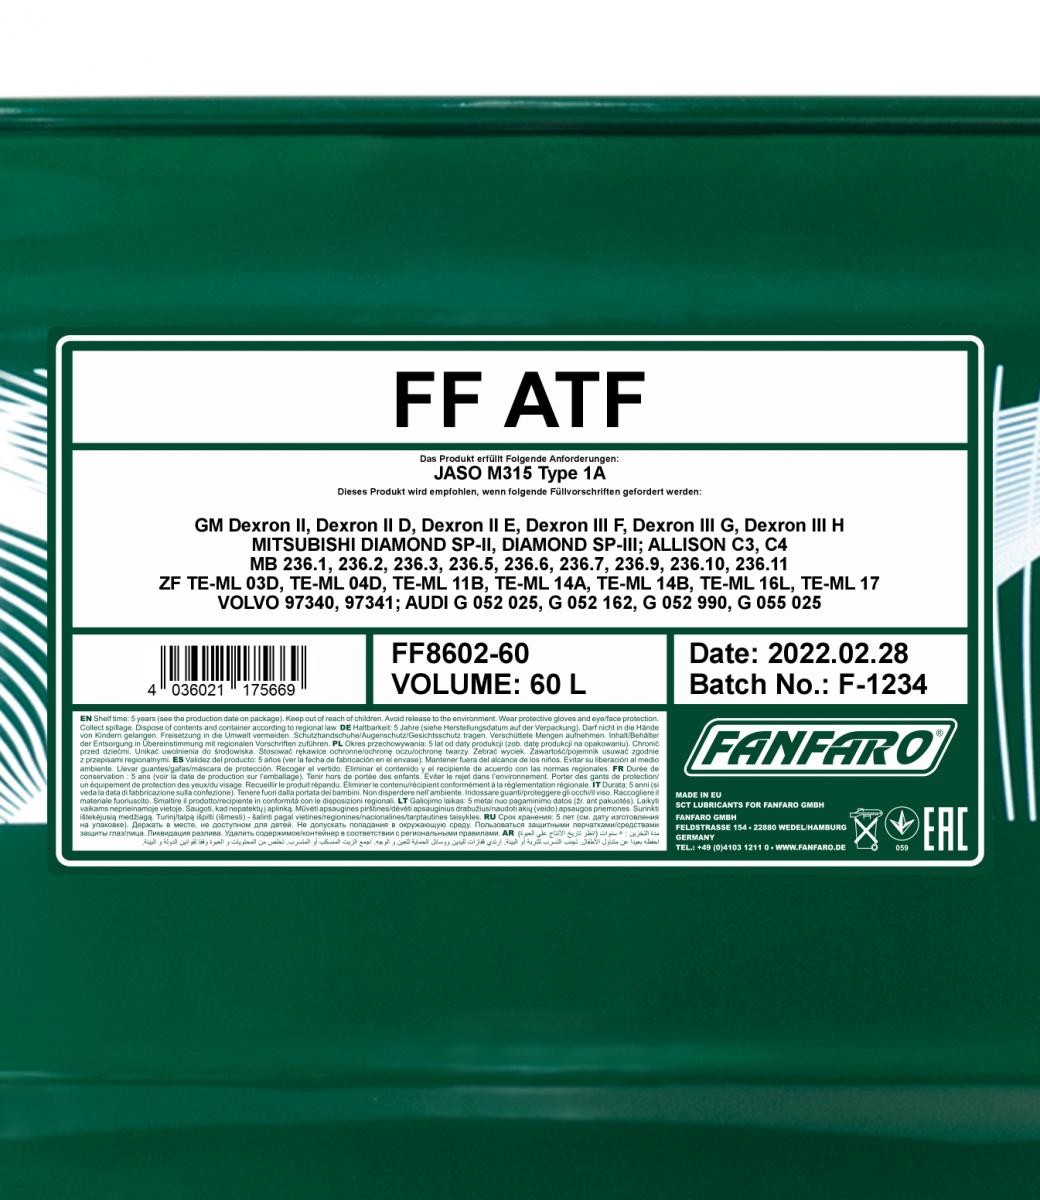 FANFARO Automatic transmission fluid FF8602-60